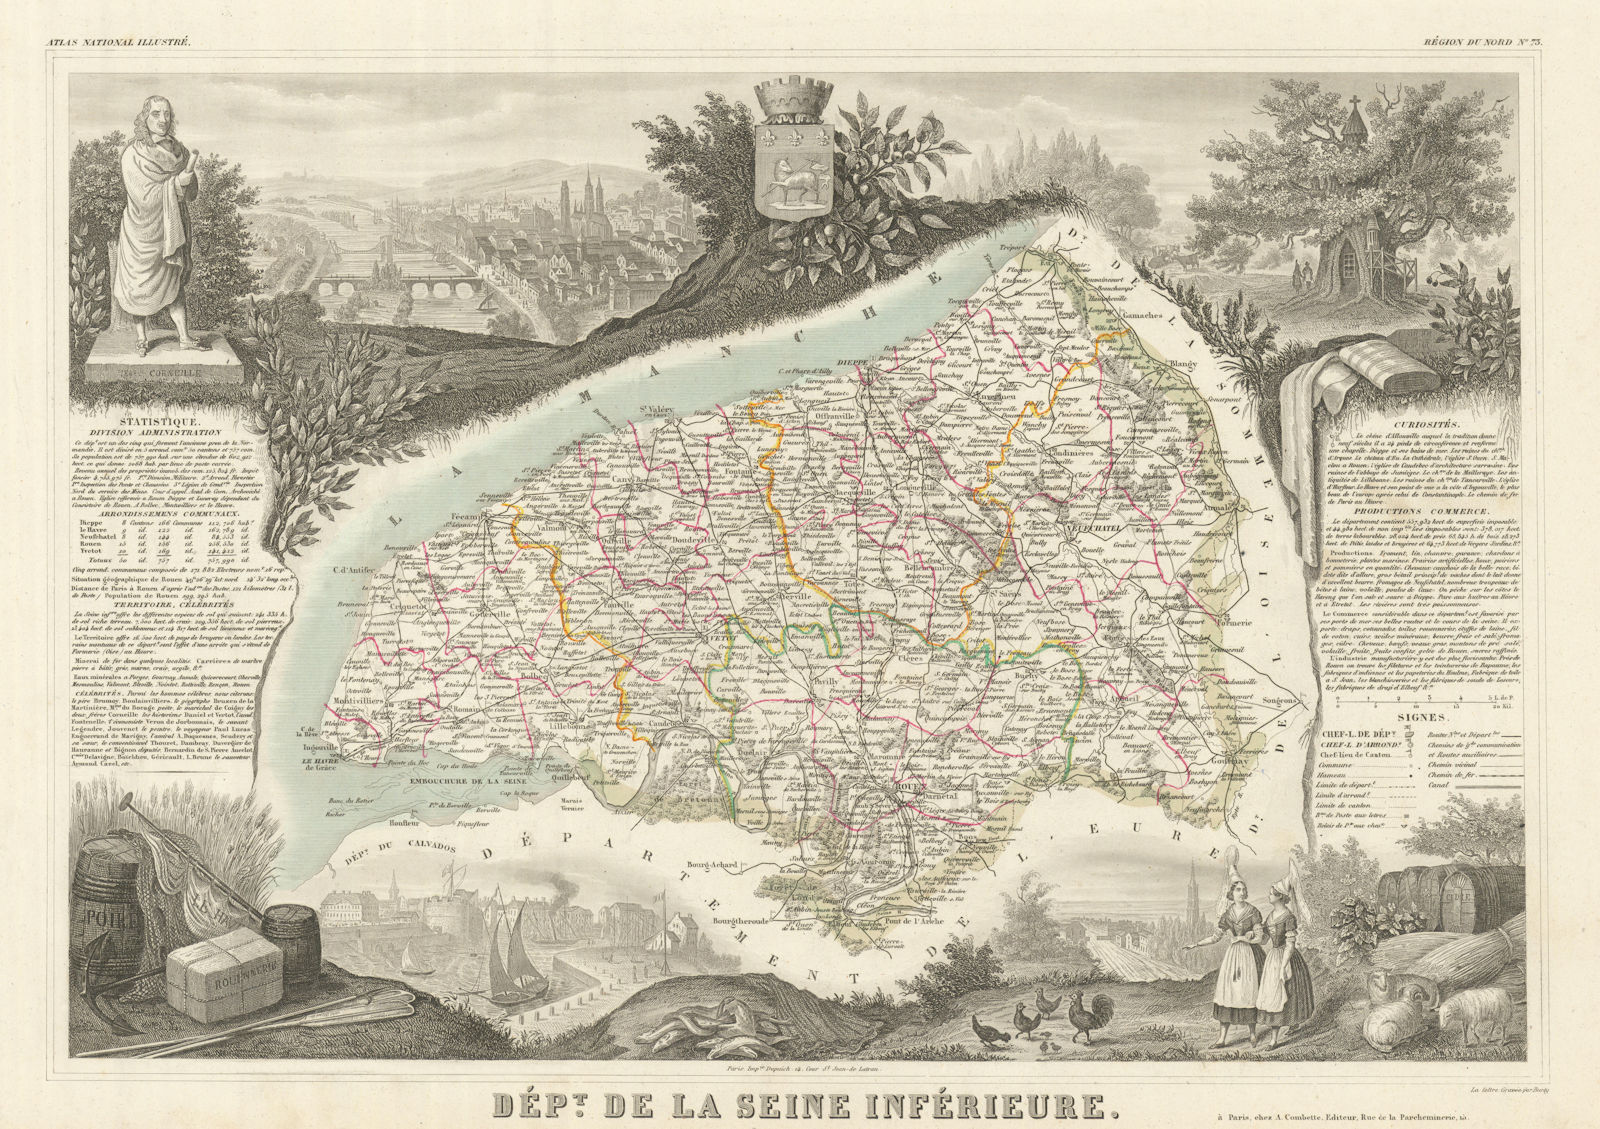 Département de la SEINE-INFÉRIEURE. Seine-Maritime. LEVASSEUR 1856 old map